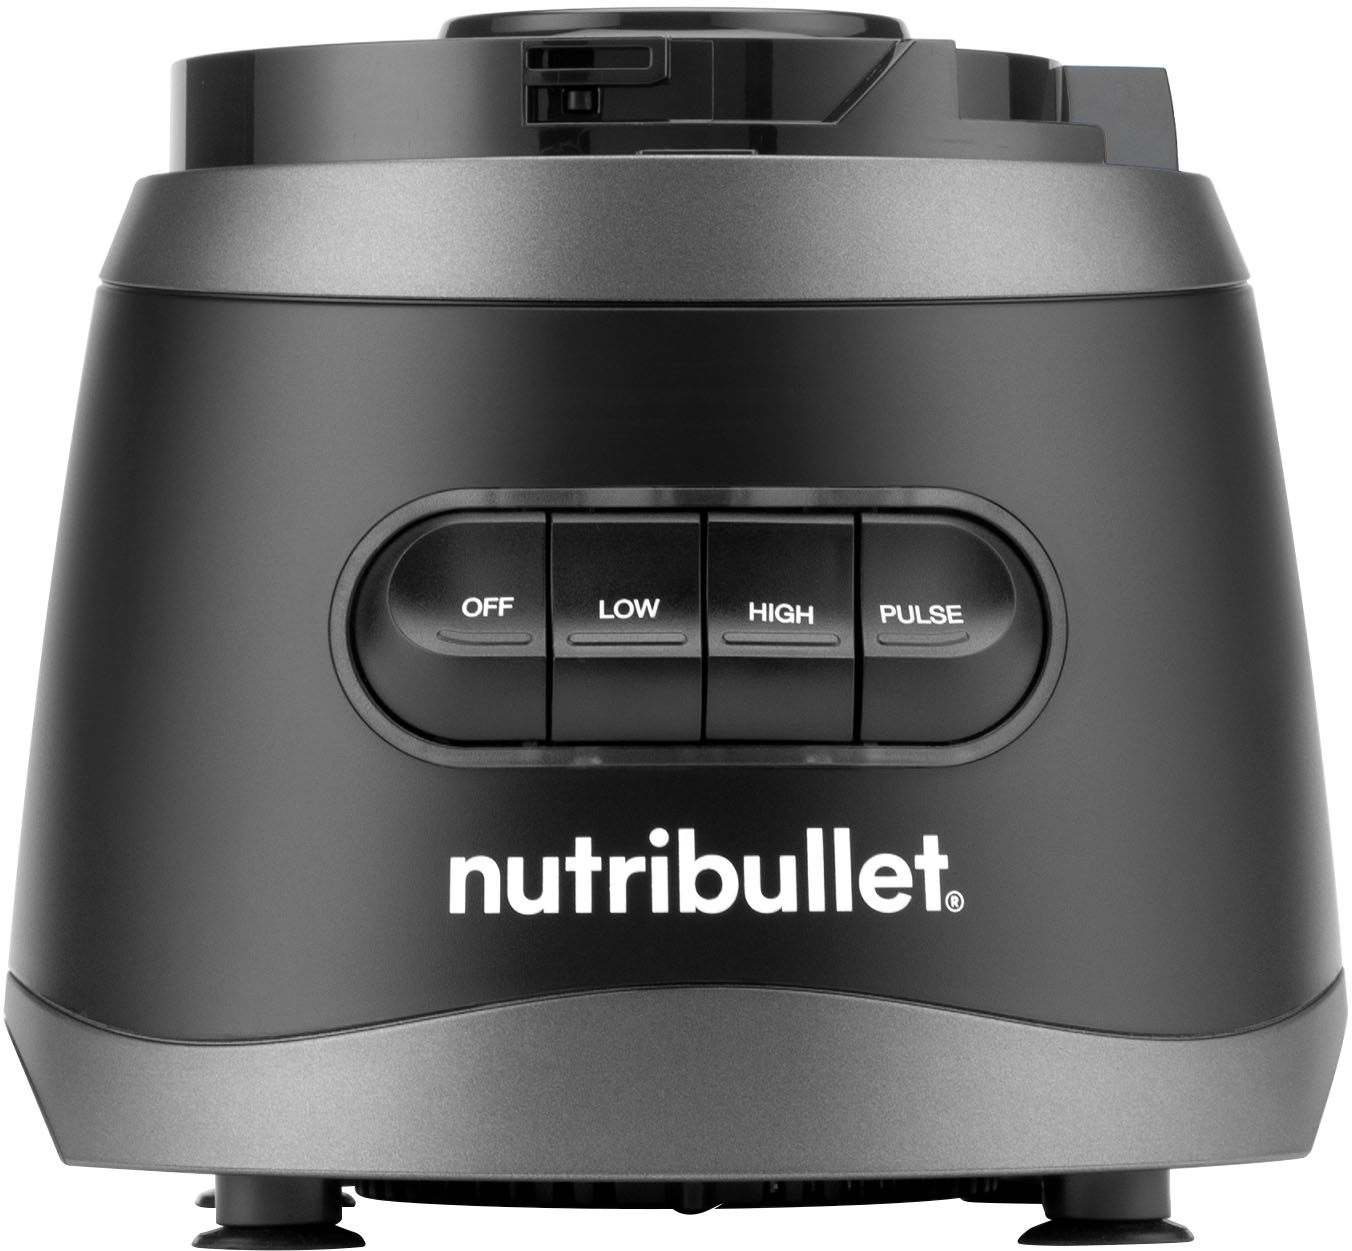 Best Buy: nutribullet 7-Cup Food Processor with Built-In Storage NBP50100  Black NBP50100